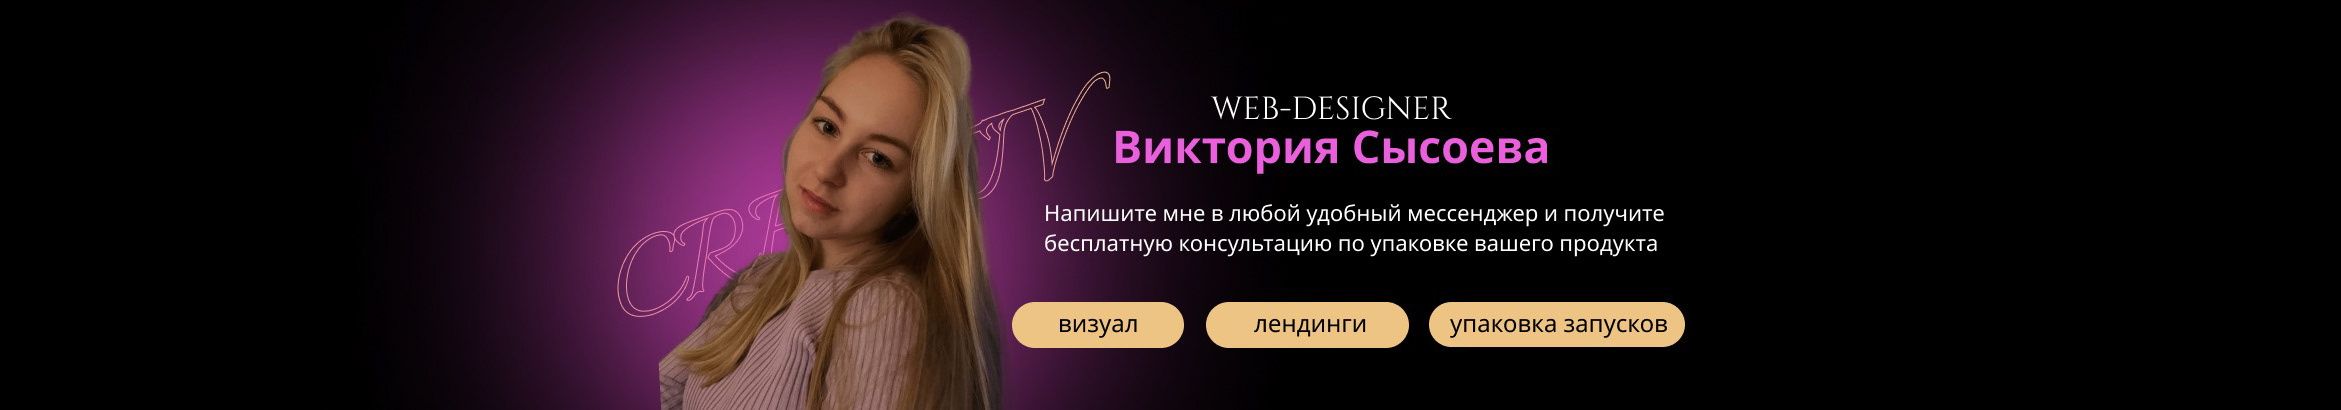 Viktoria Sysoeva's profile banner